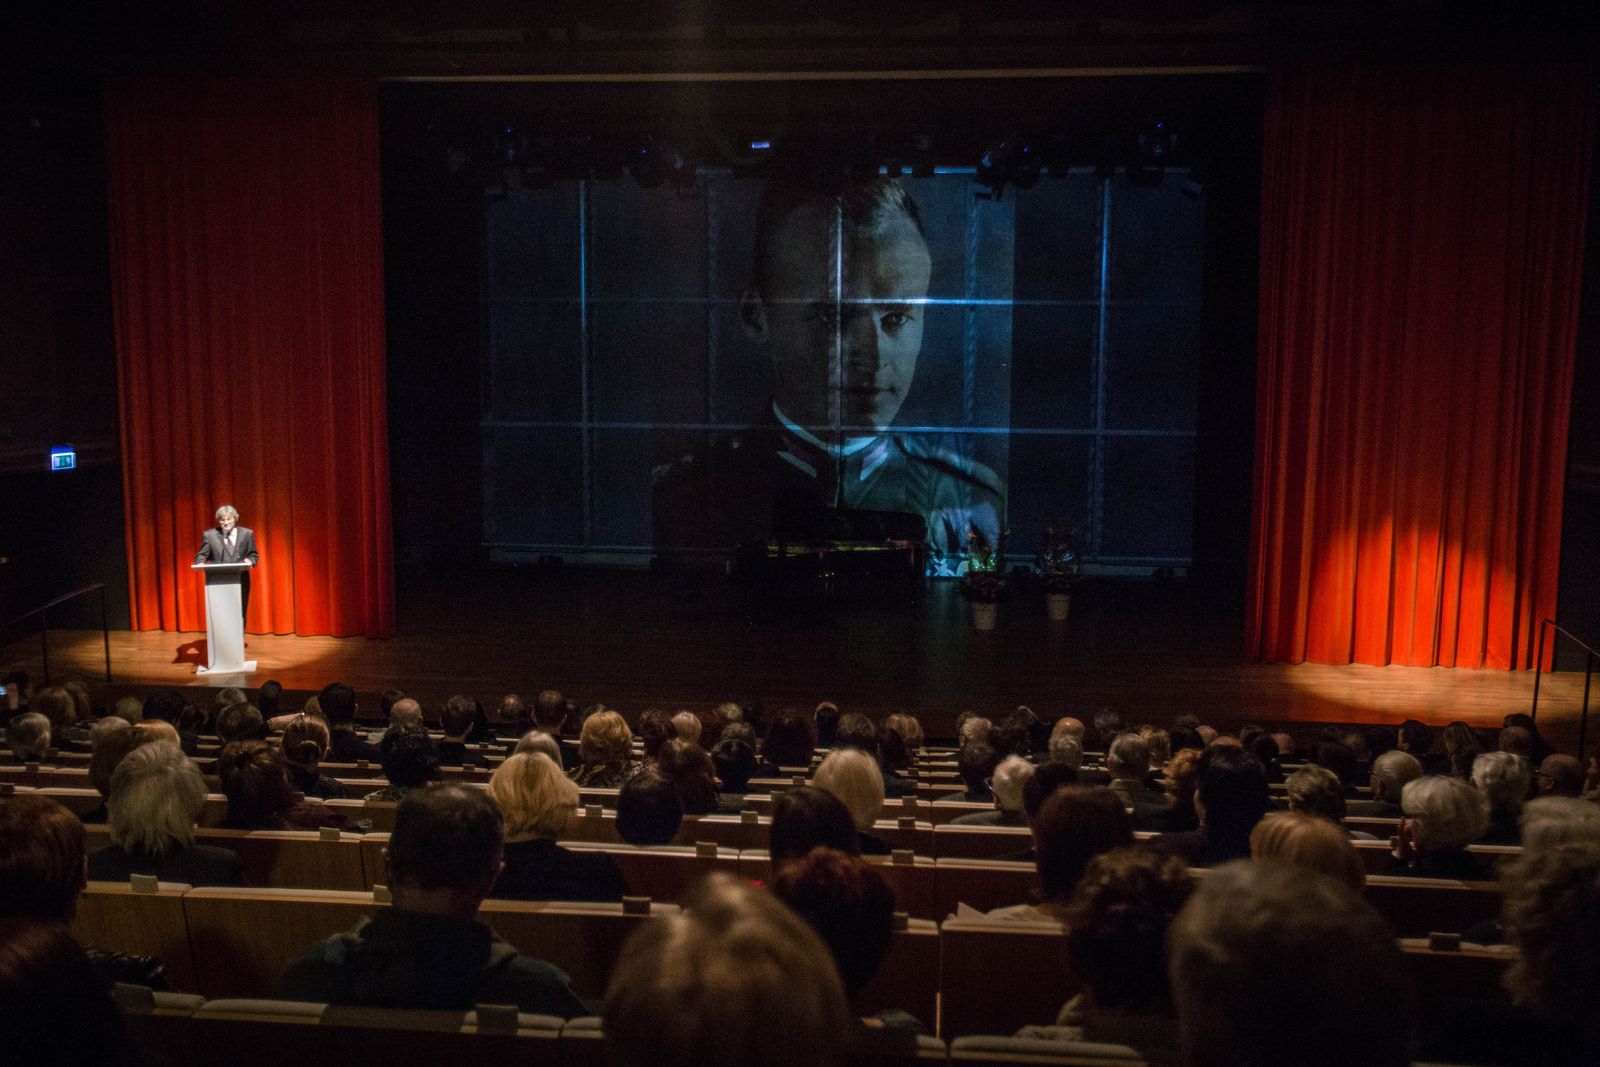 Gala w muzeum Polin z okazji rozdania nagród Sprawiedliwi wśród Narodów Świata w 2016 r. Sala widowiskowa. Na ekranie wyświetlone jest zdjęcie rotmistrza Witolda Pileckiego.    